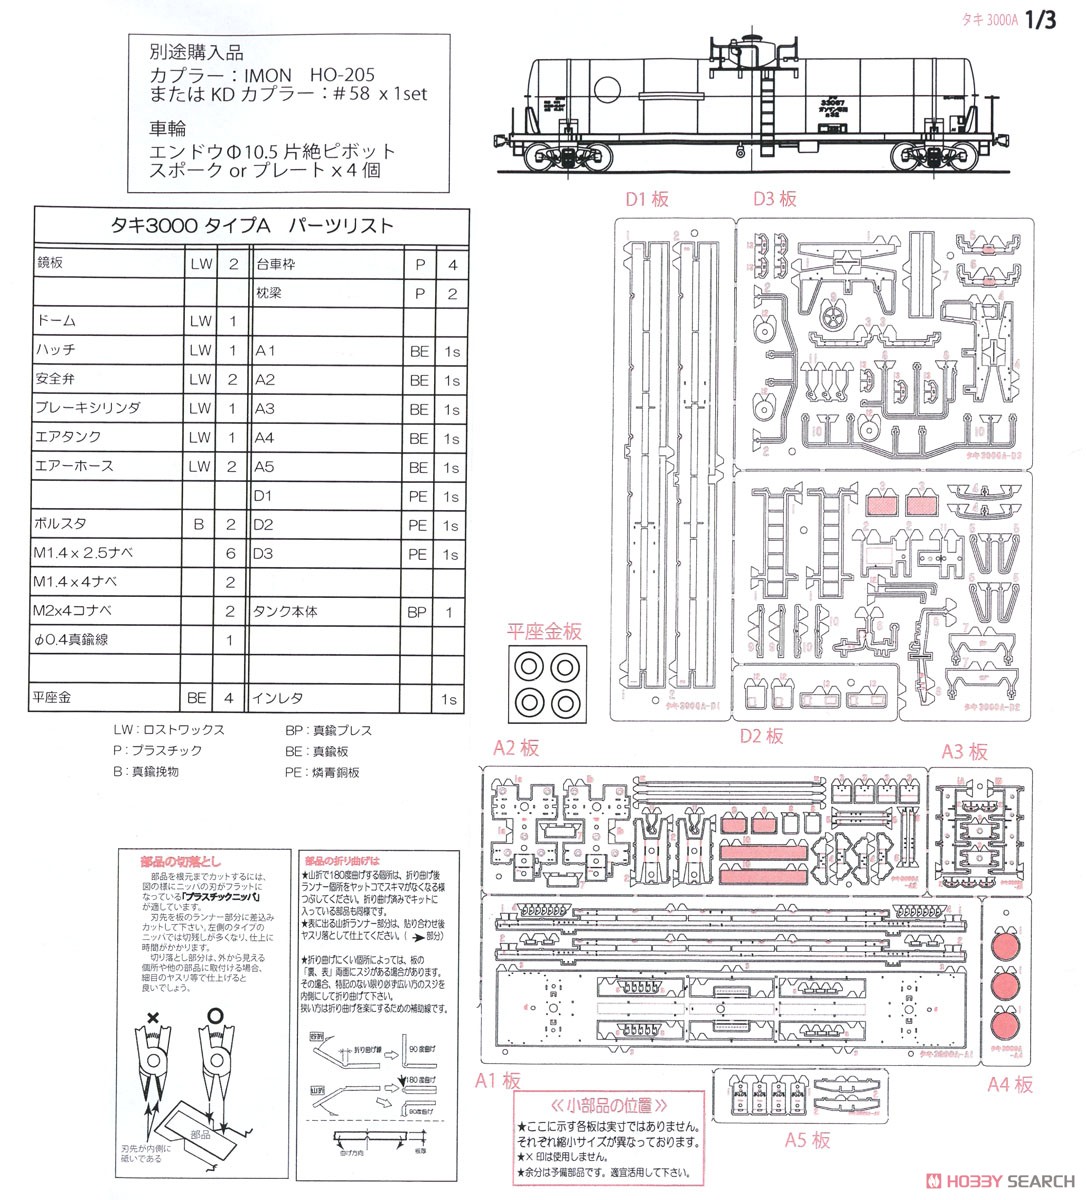 16番(HO) タキ3000形 ガソリン専用タンク車 タイプA 組立キット (組み立てキット) (鉄道模型) 設計図1